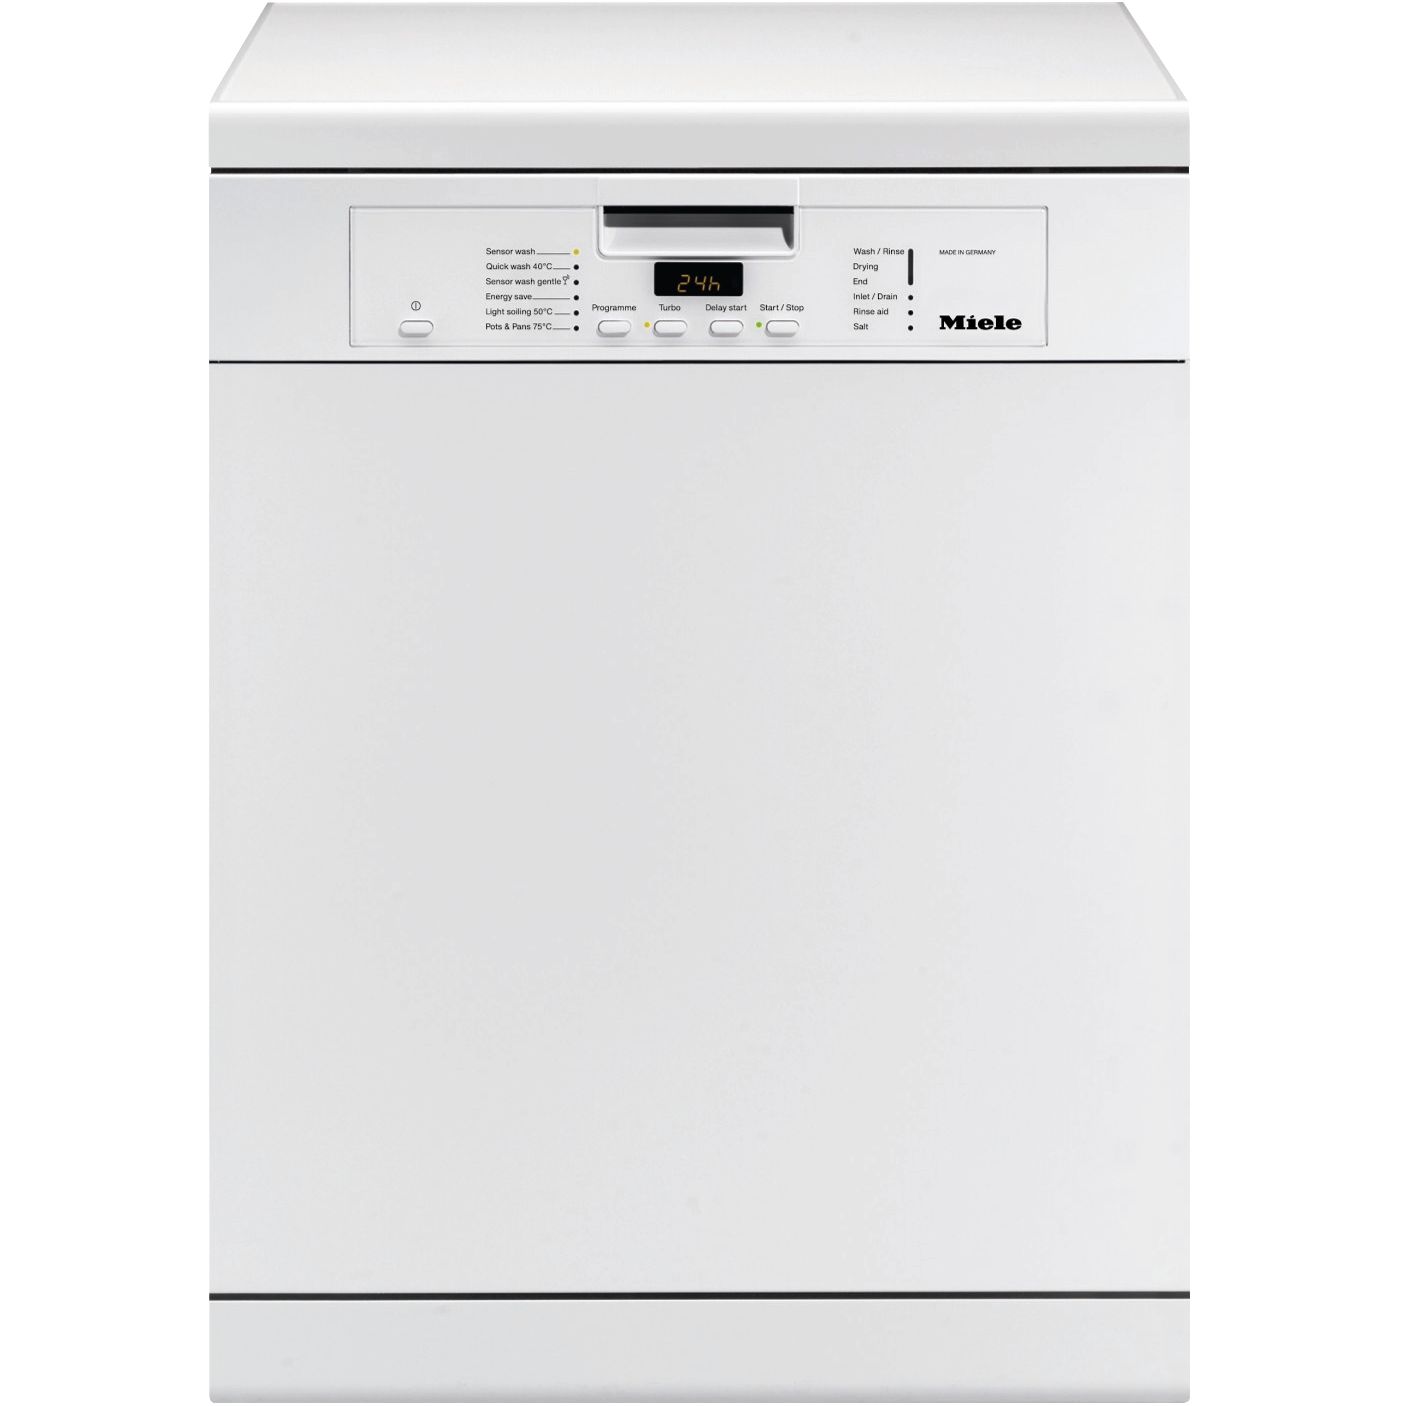 Miele G5100SC Dishwasher, White at John Lewis